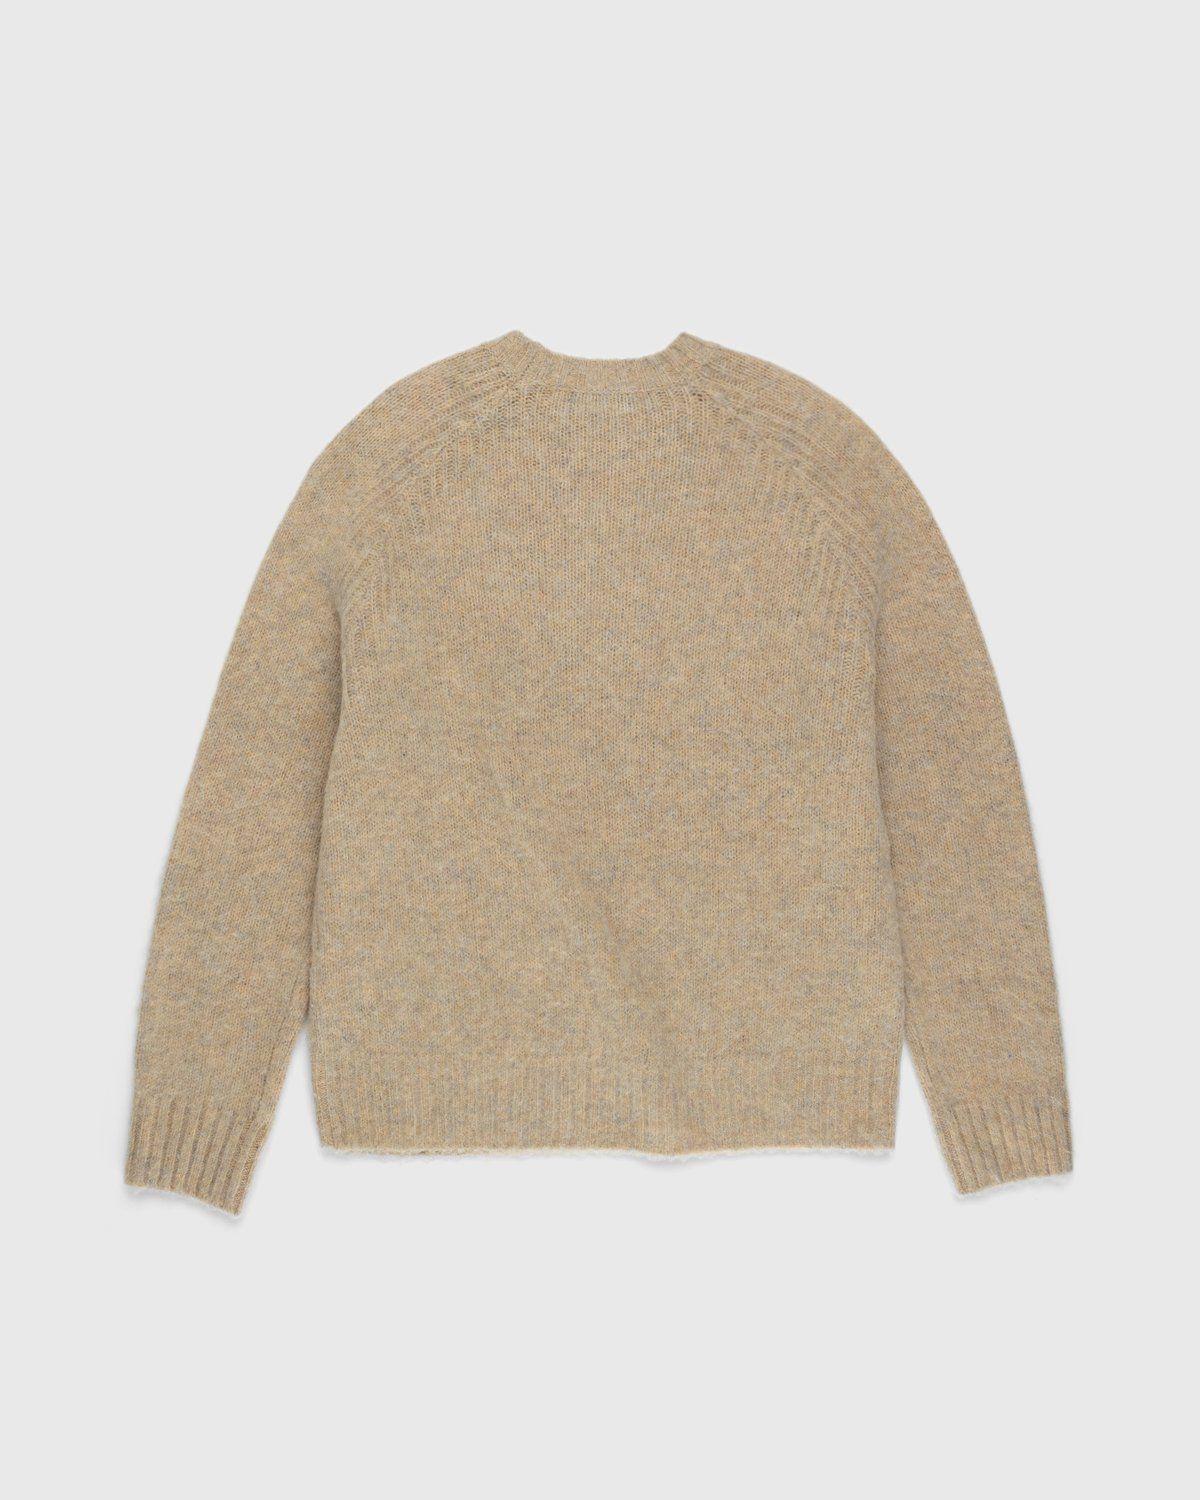 Acne Studios – Brushed Wool Crewneck Sweater Toffee Brown - Knitwear - Brown - Image 2